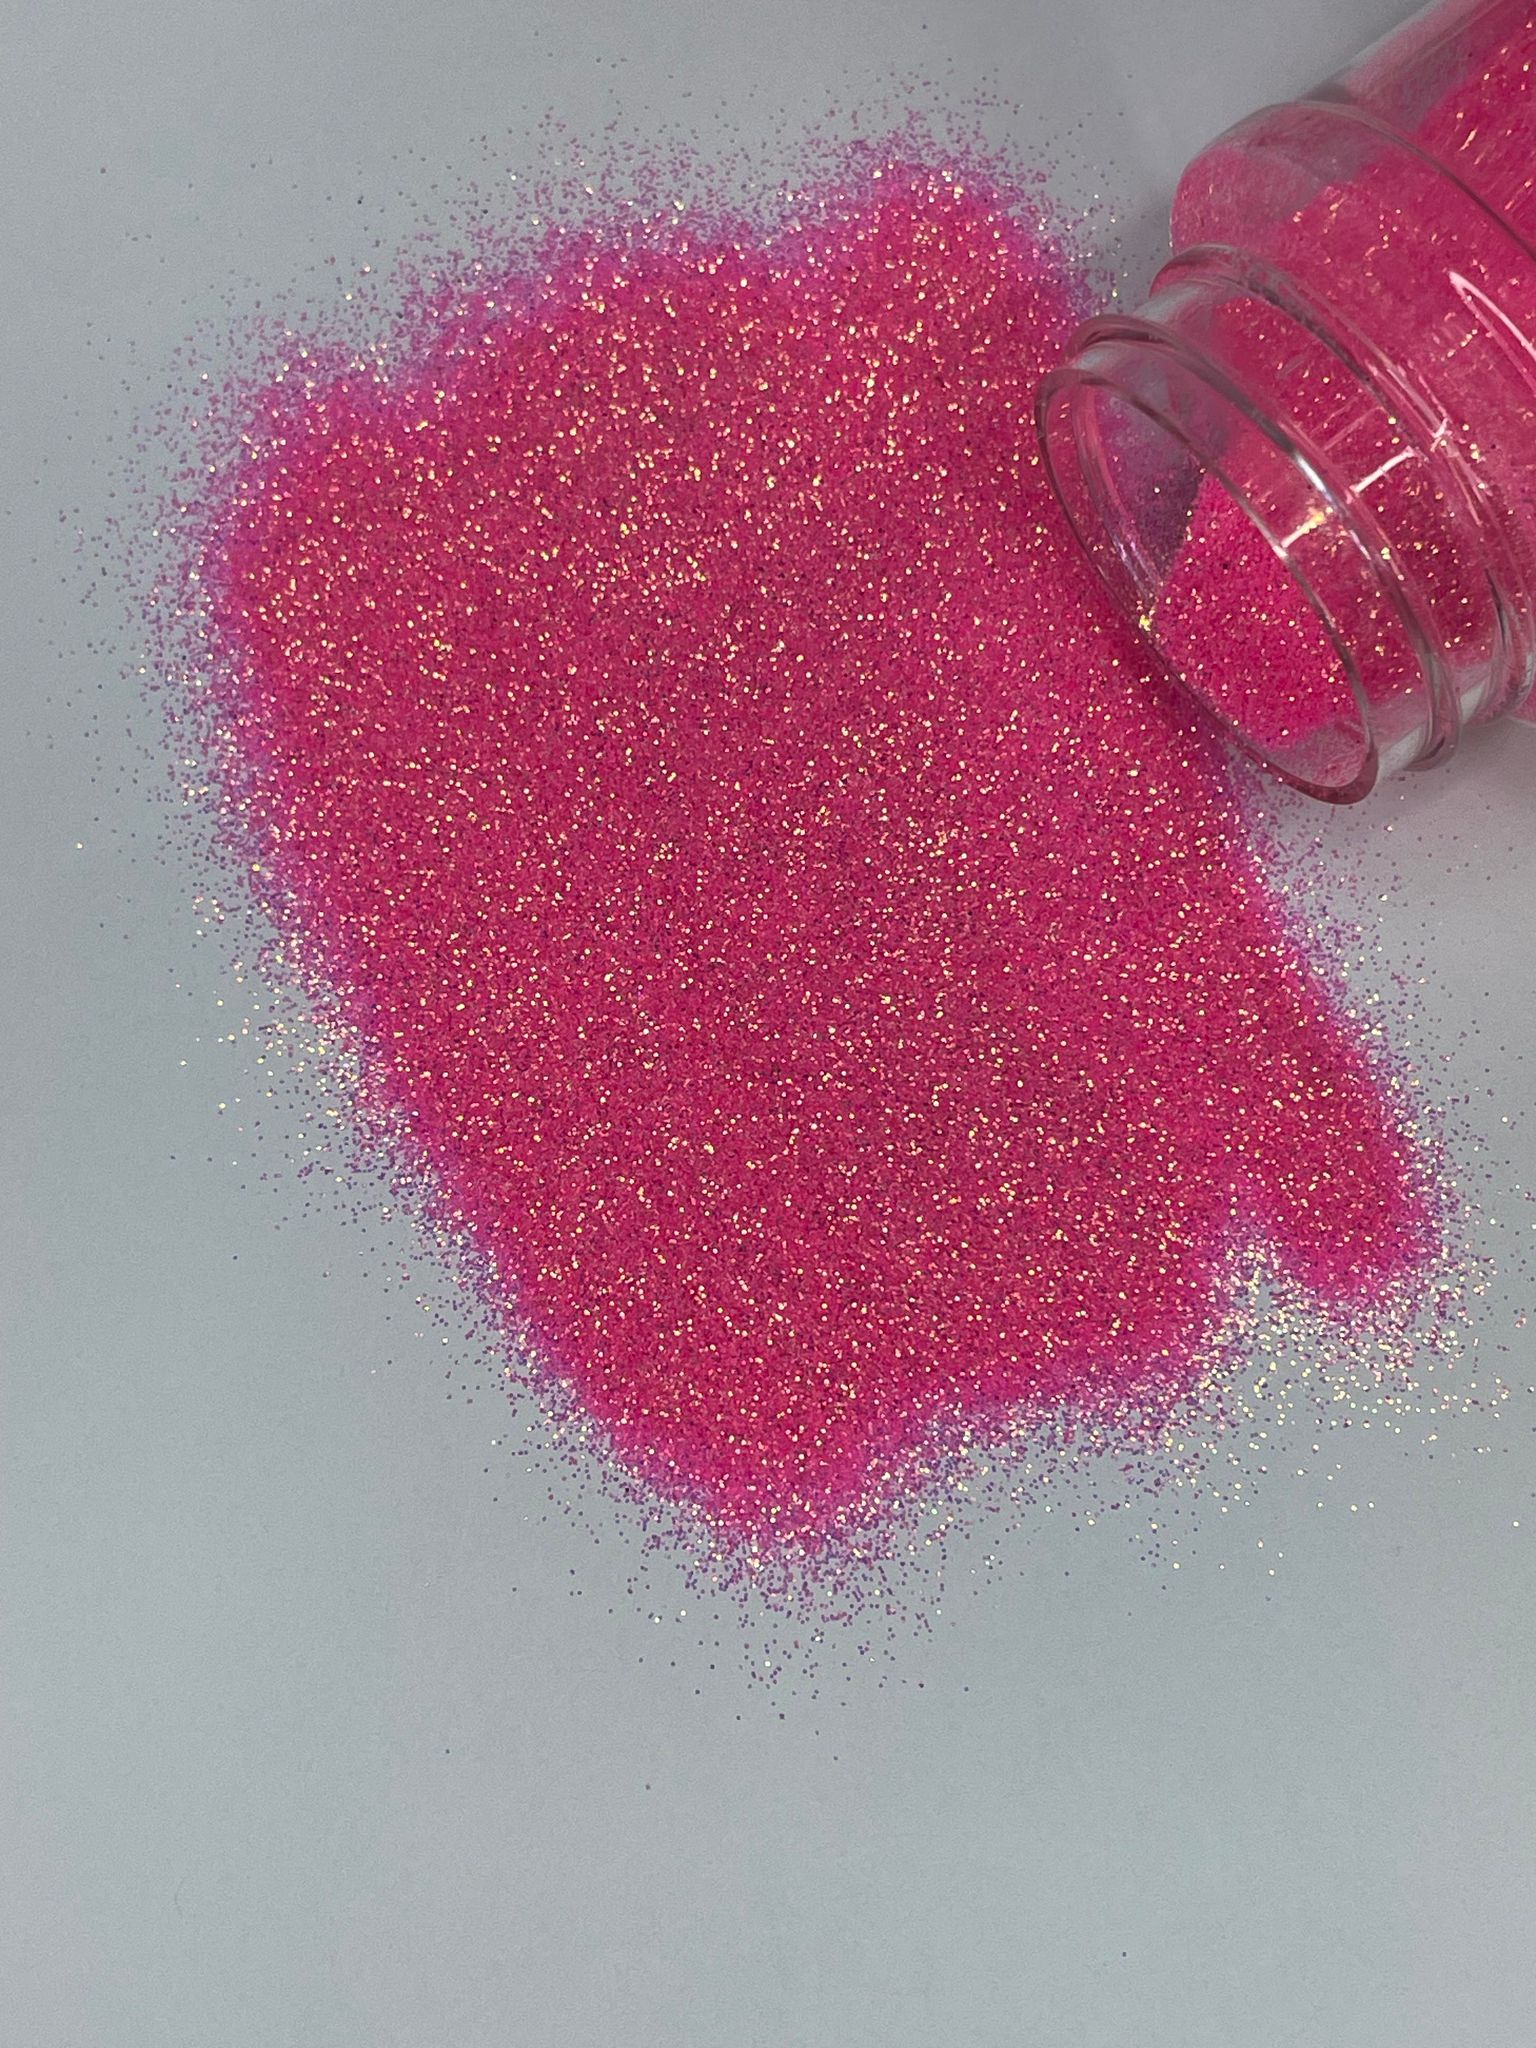 Miss Firecracker - Glitter - Pink Glitter - Hot Pink Fine Glitter